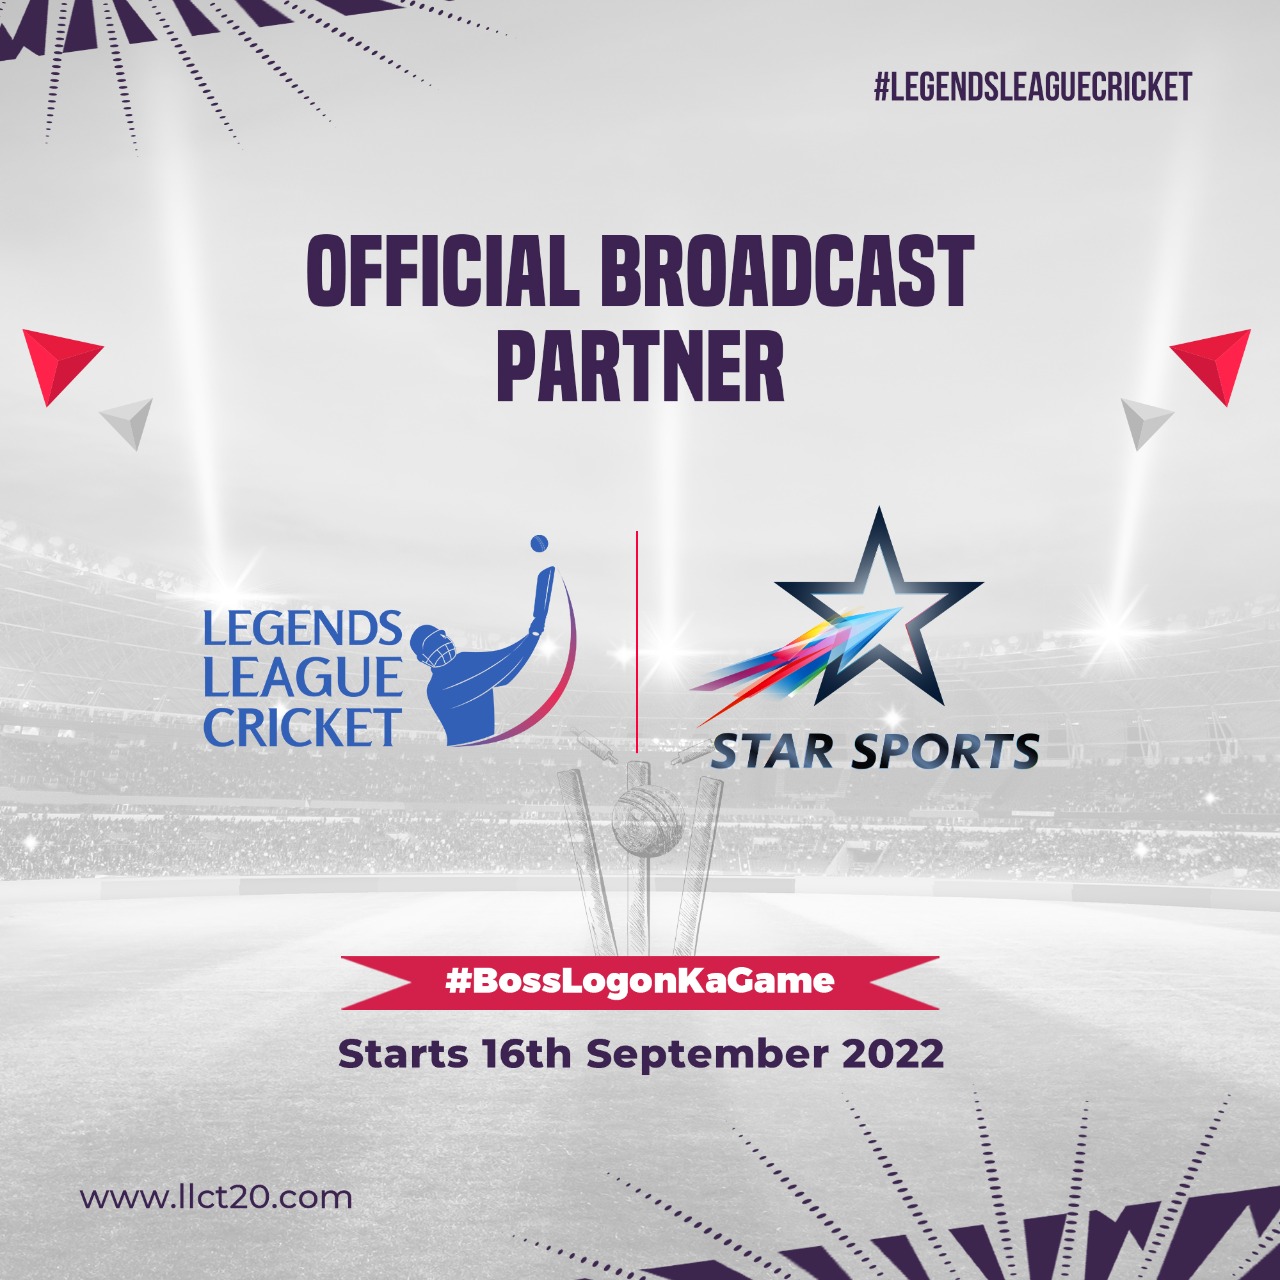 Legends League Cricket Final Live Score 2022: India Capitals vs Bhilwara Kings Live Score- Legends League Cricket 2022 Live Score, Live Streaming, Live Telecast Channel